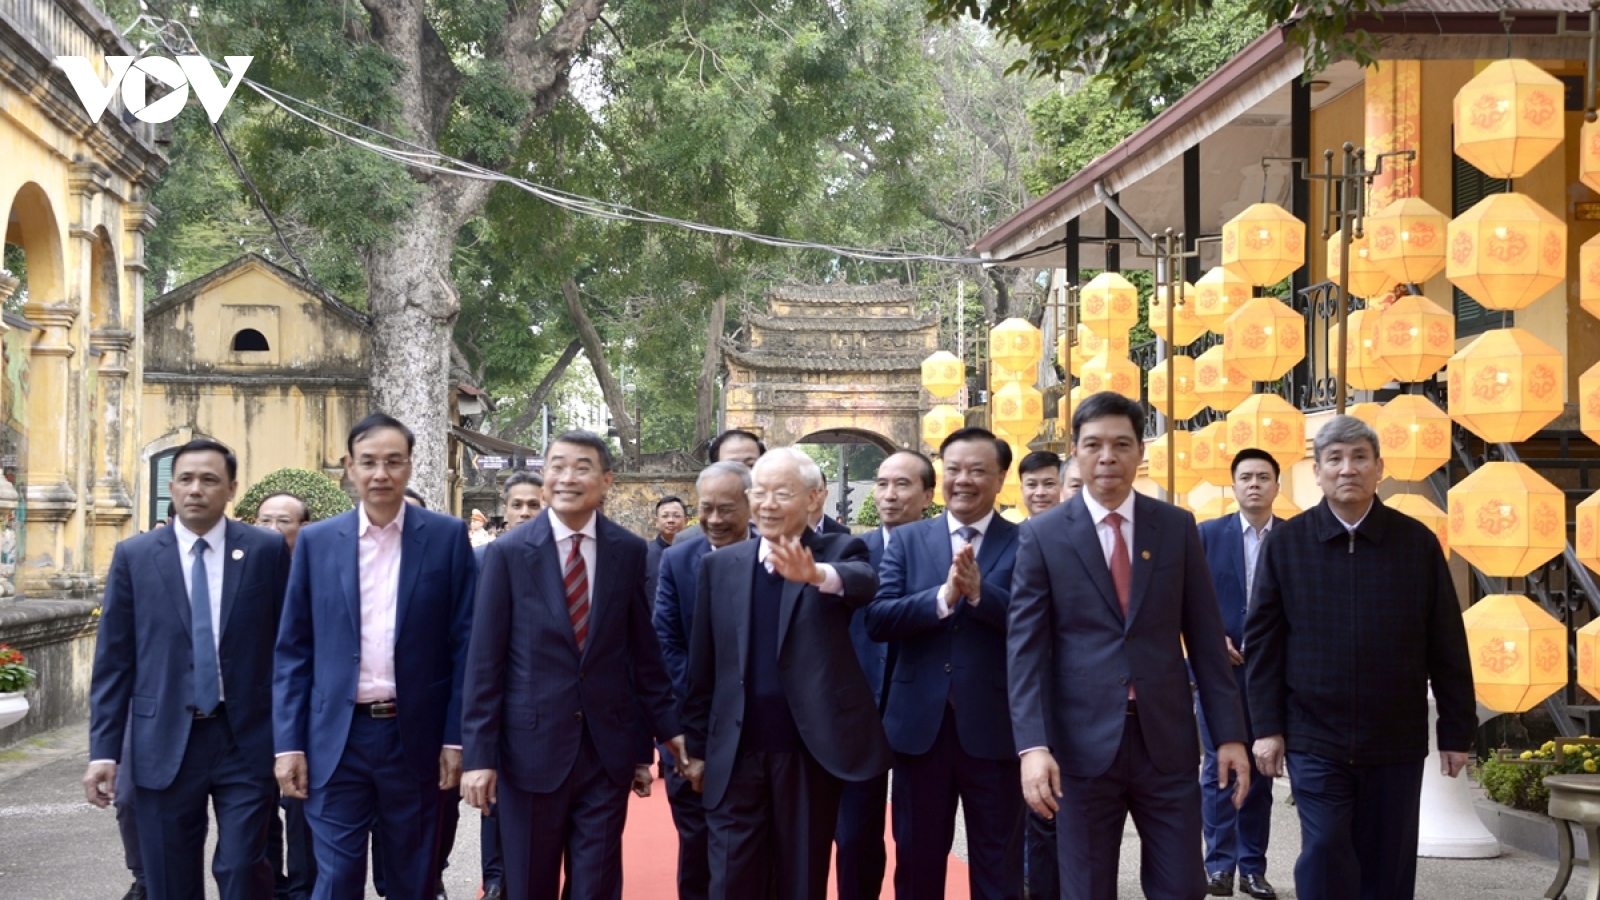 Hình ảnh Tổng Bí thư Nguyễn Phú Trọng dâng hương tại Hoàng thành Thăng Long